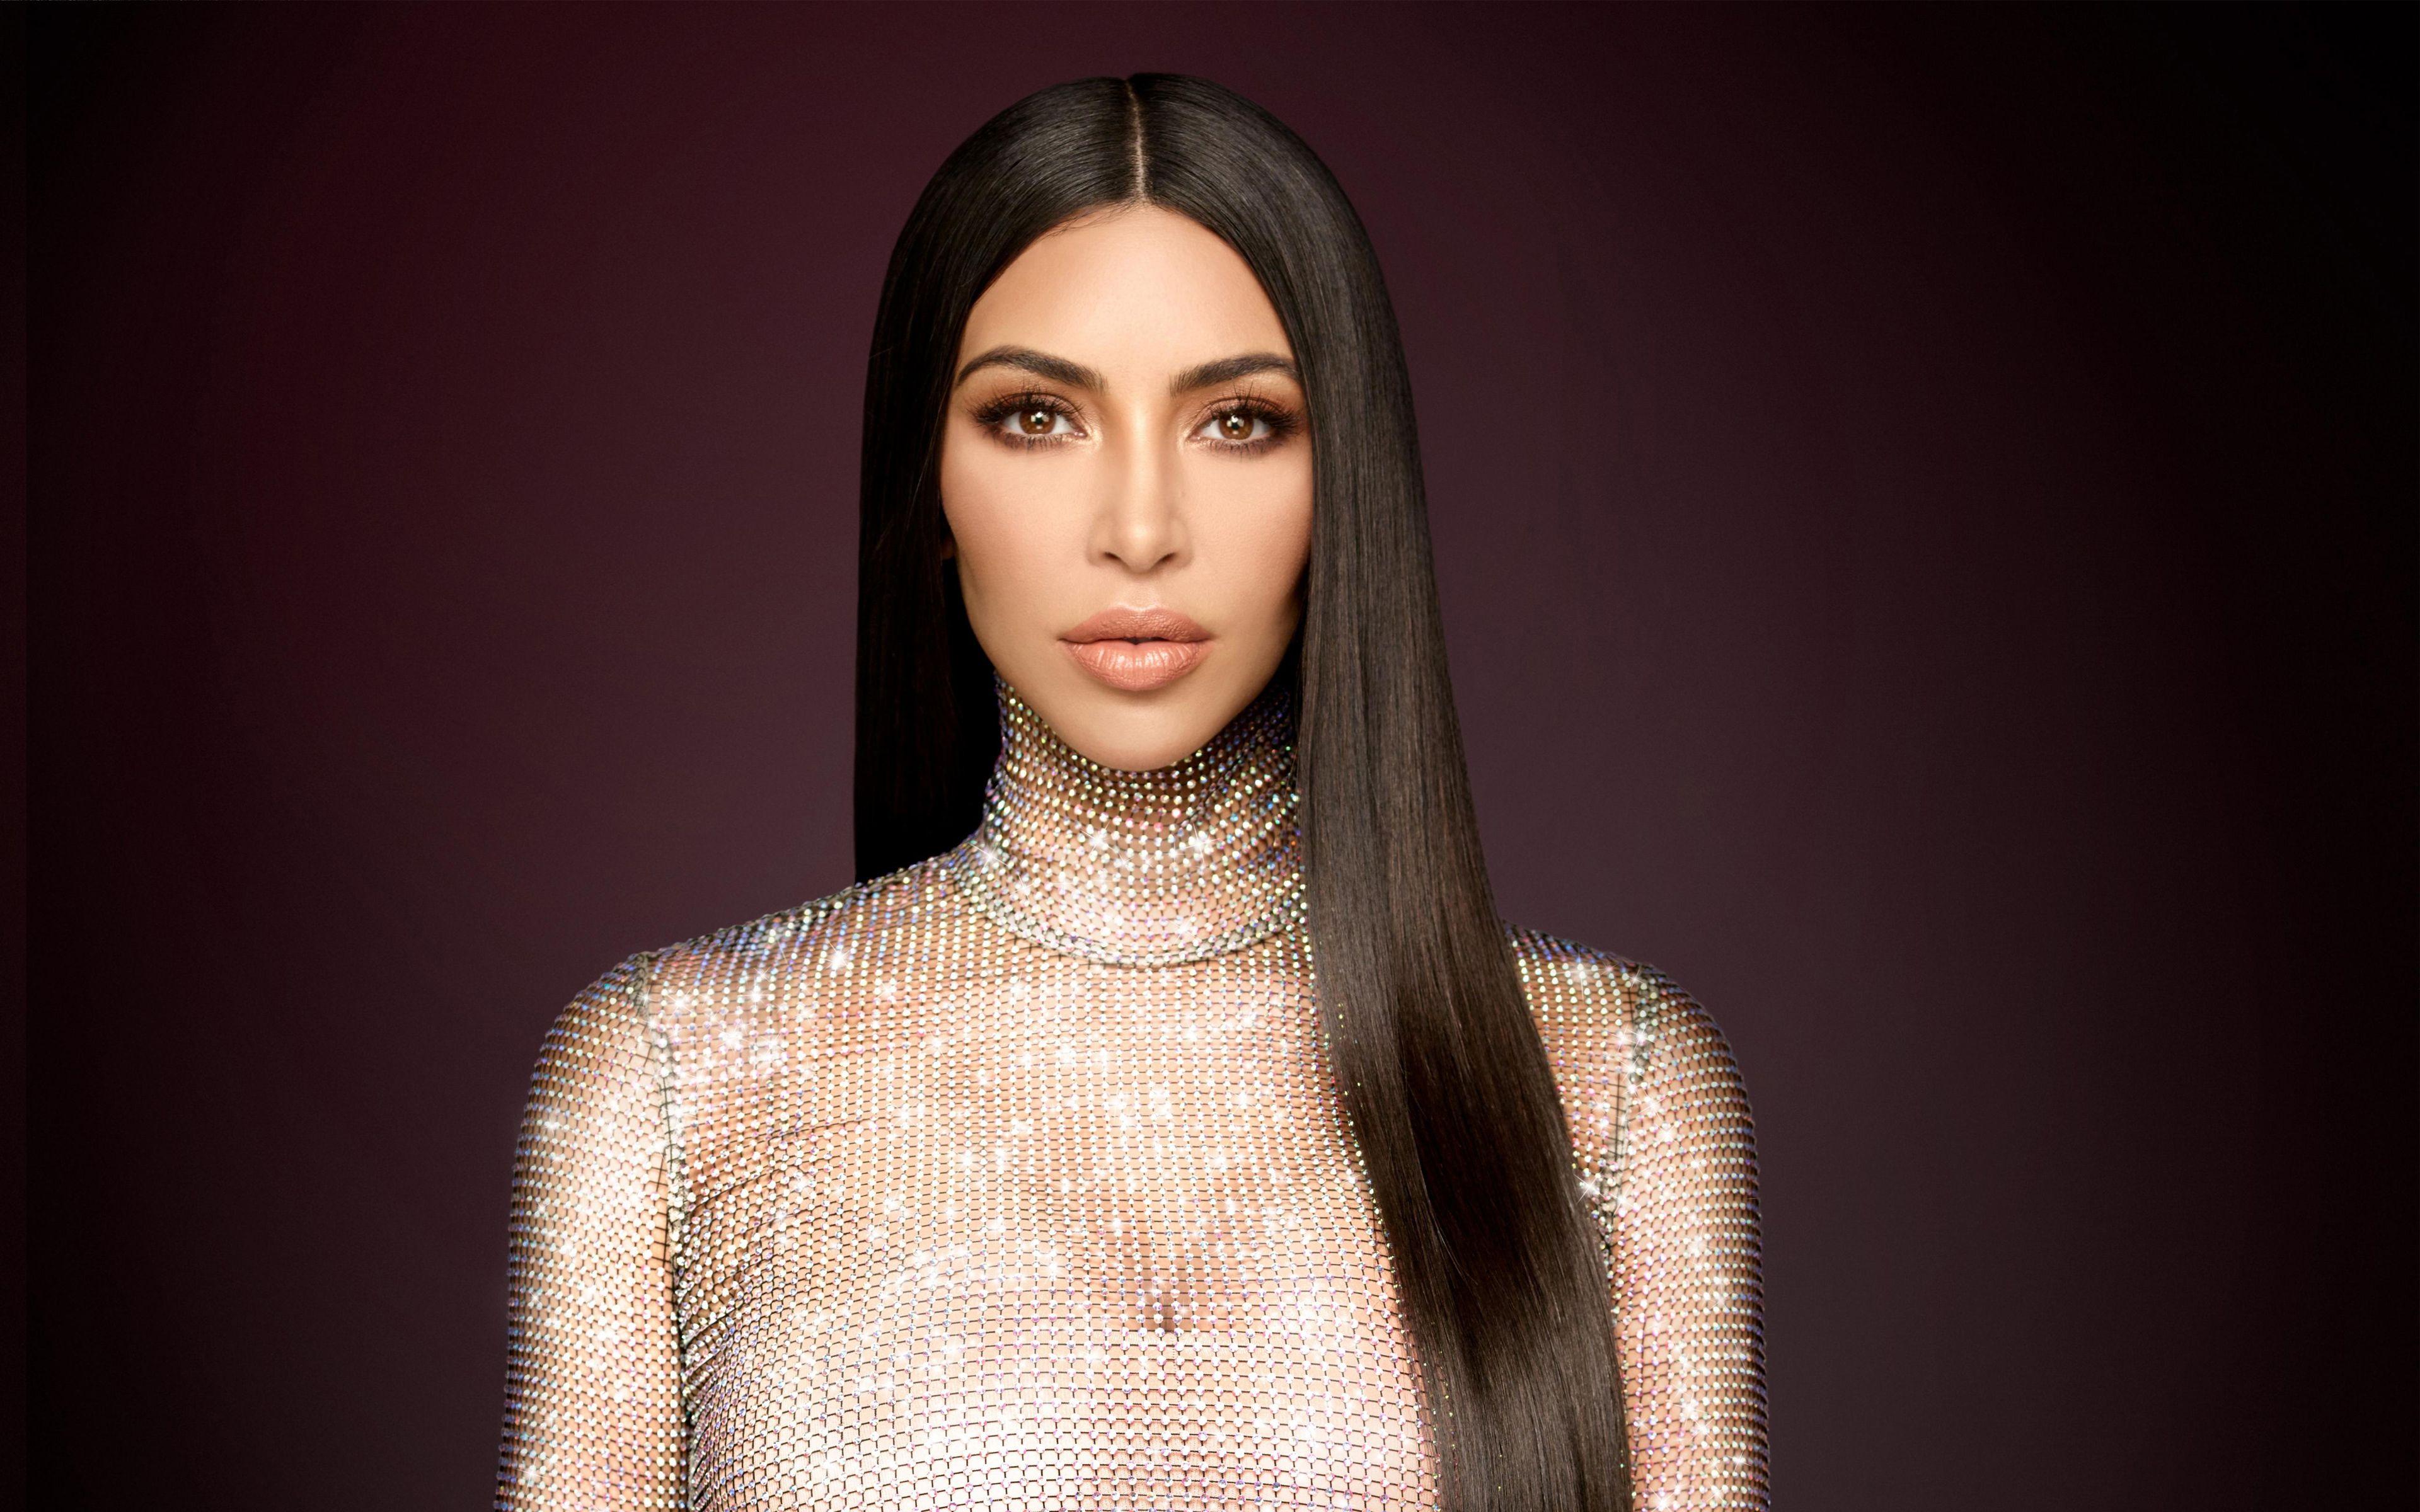 Kim Kardashian Keeping up with the Kardashians 2017 4K Wallpapers